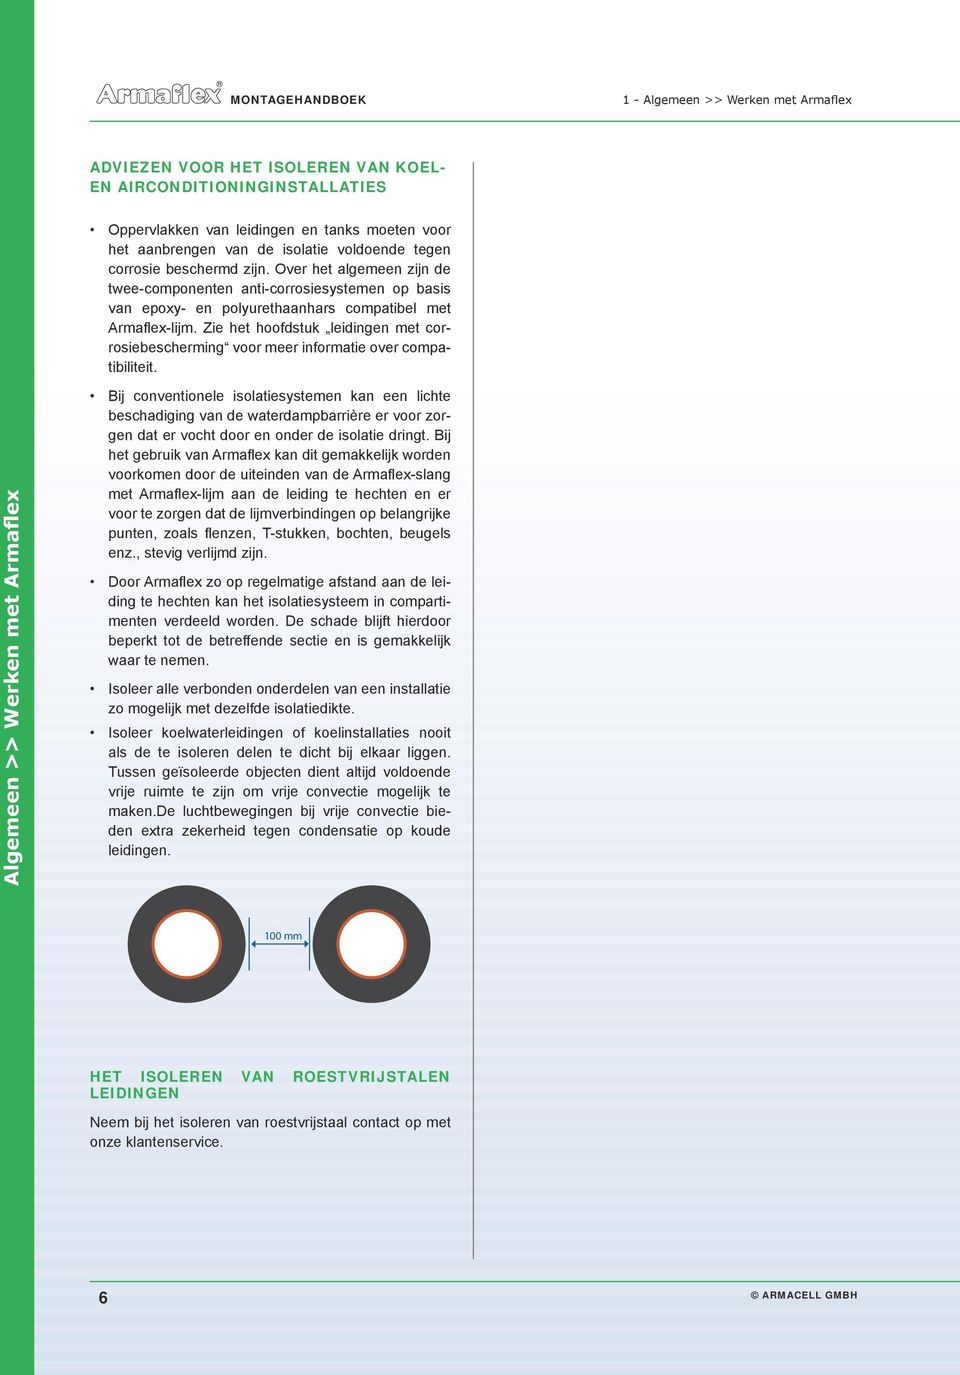 Zie het hoofdstuk leidingen met corrosiebescherming voor meer informatie over compatibiliteit.